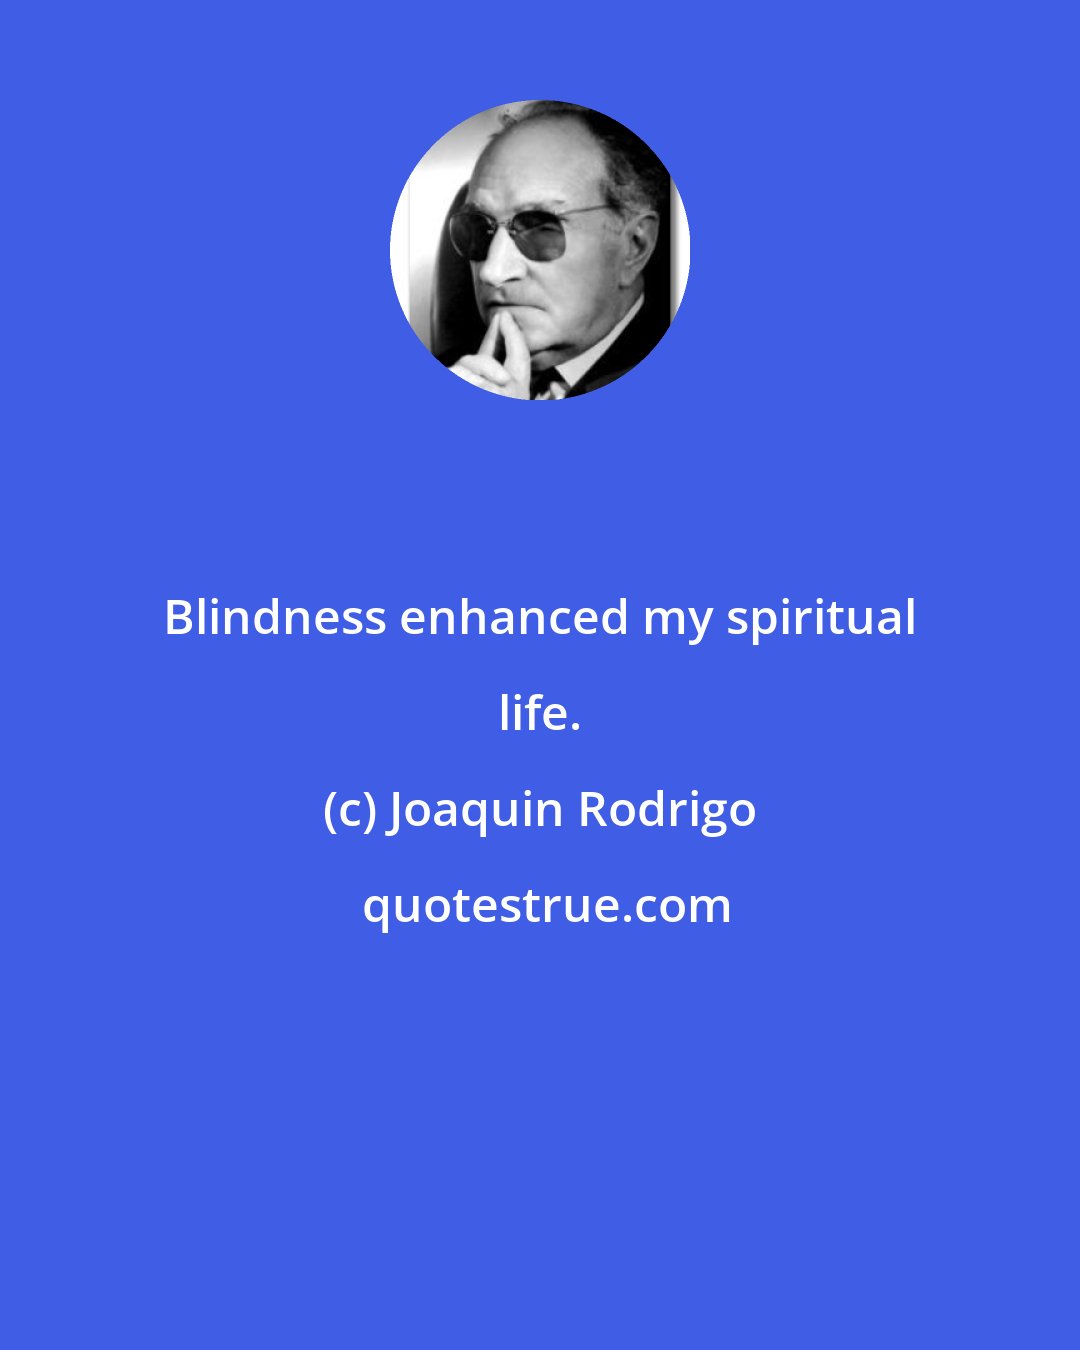 Joaquin Rodrigo: Blindness enhanced my spiritual life.